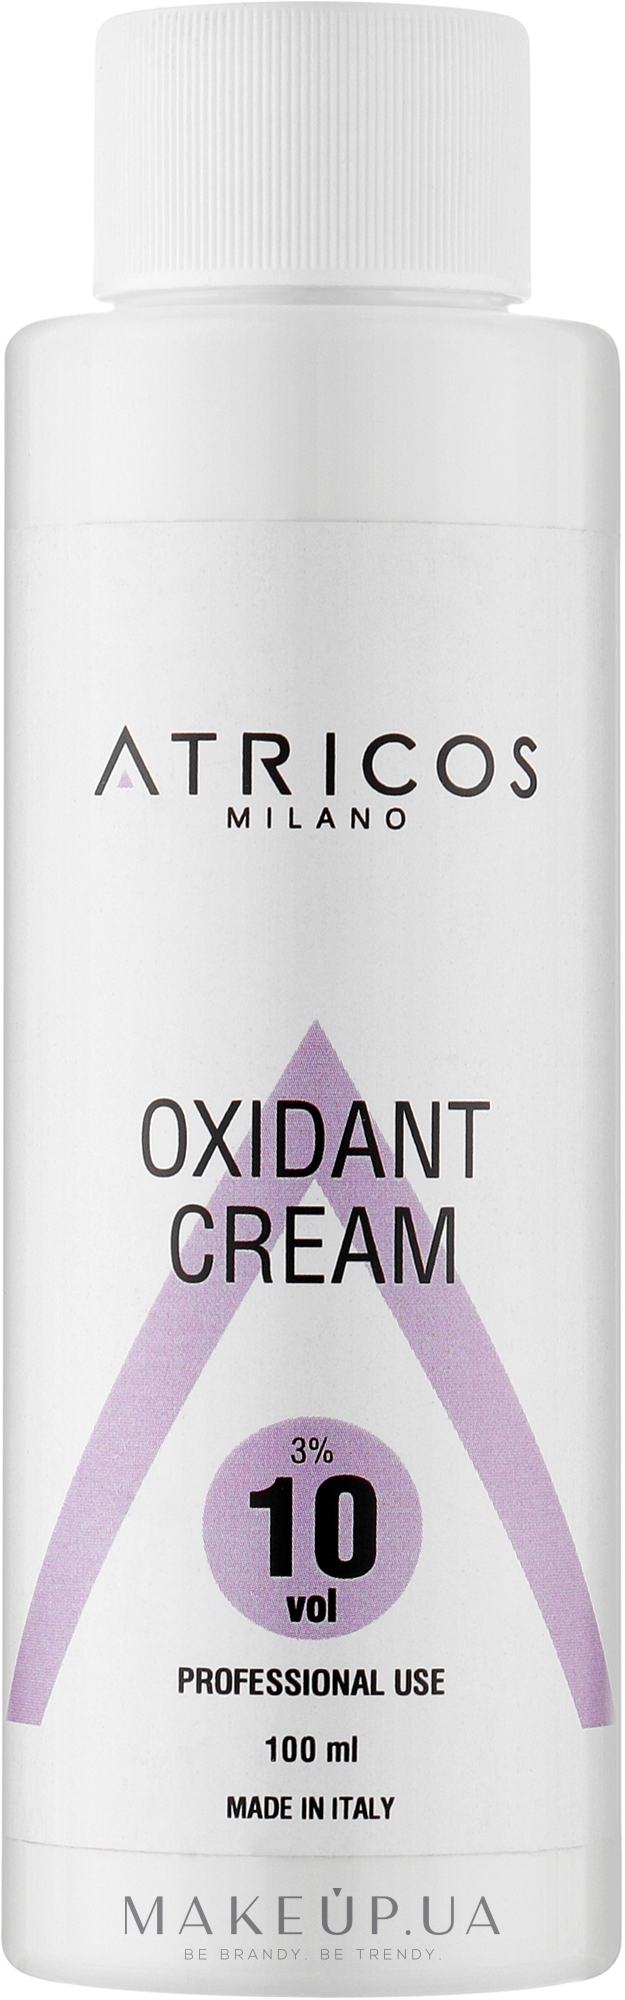 Оксидант-крем для фарбування та освітлення пасом - Atricos Oxidant Cream 10 Vol 3% — фото 100ml